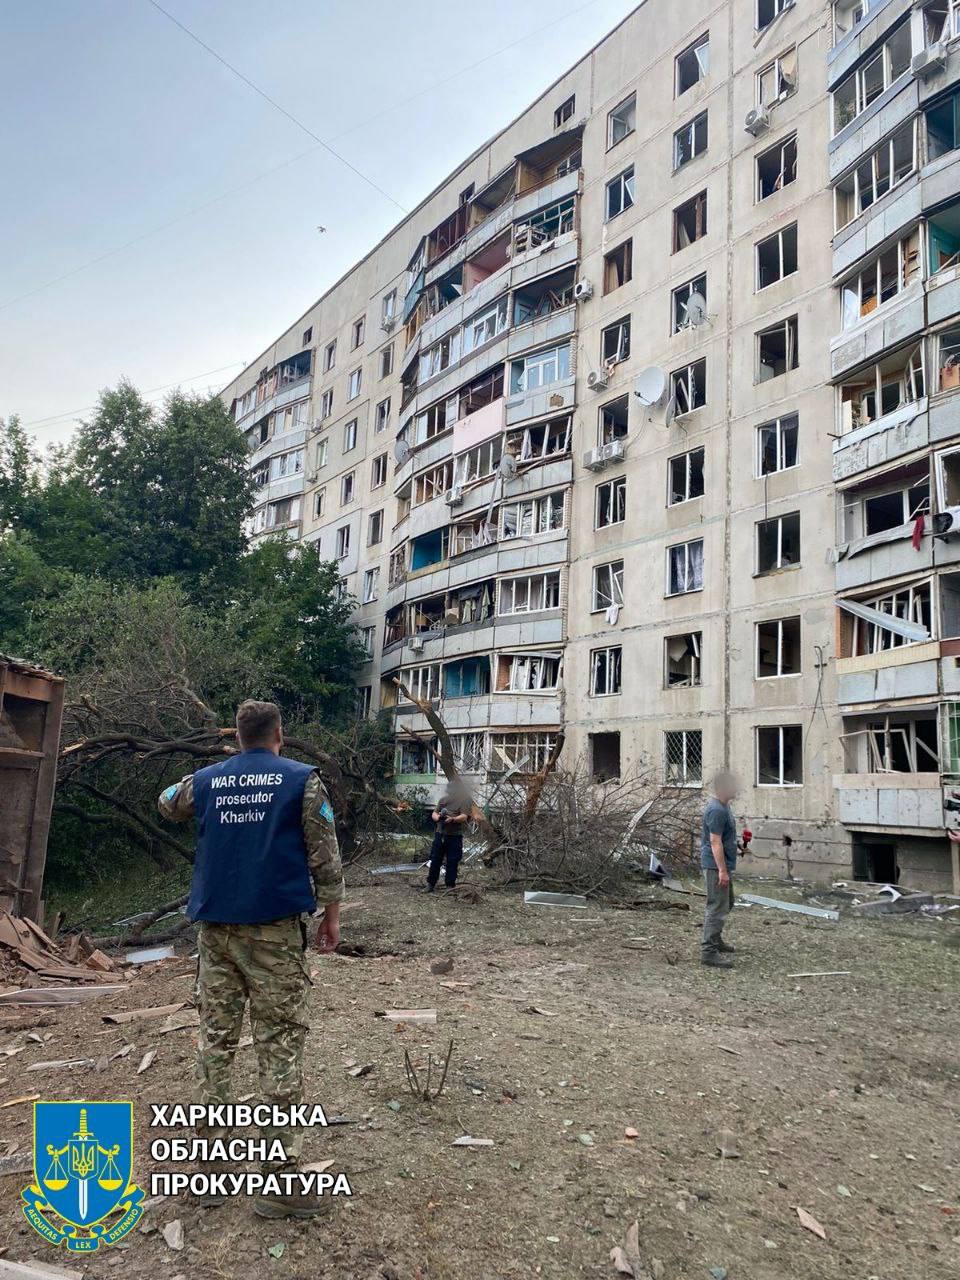 Дом в Немышлянском районе Харькова после обстрела